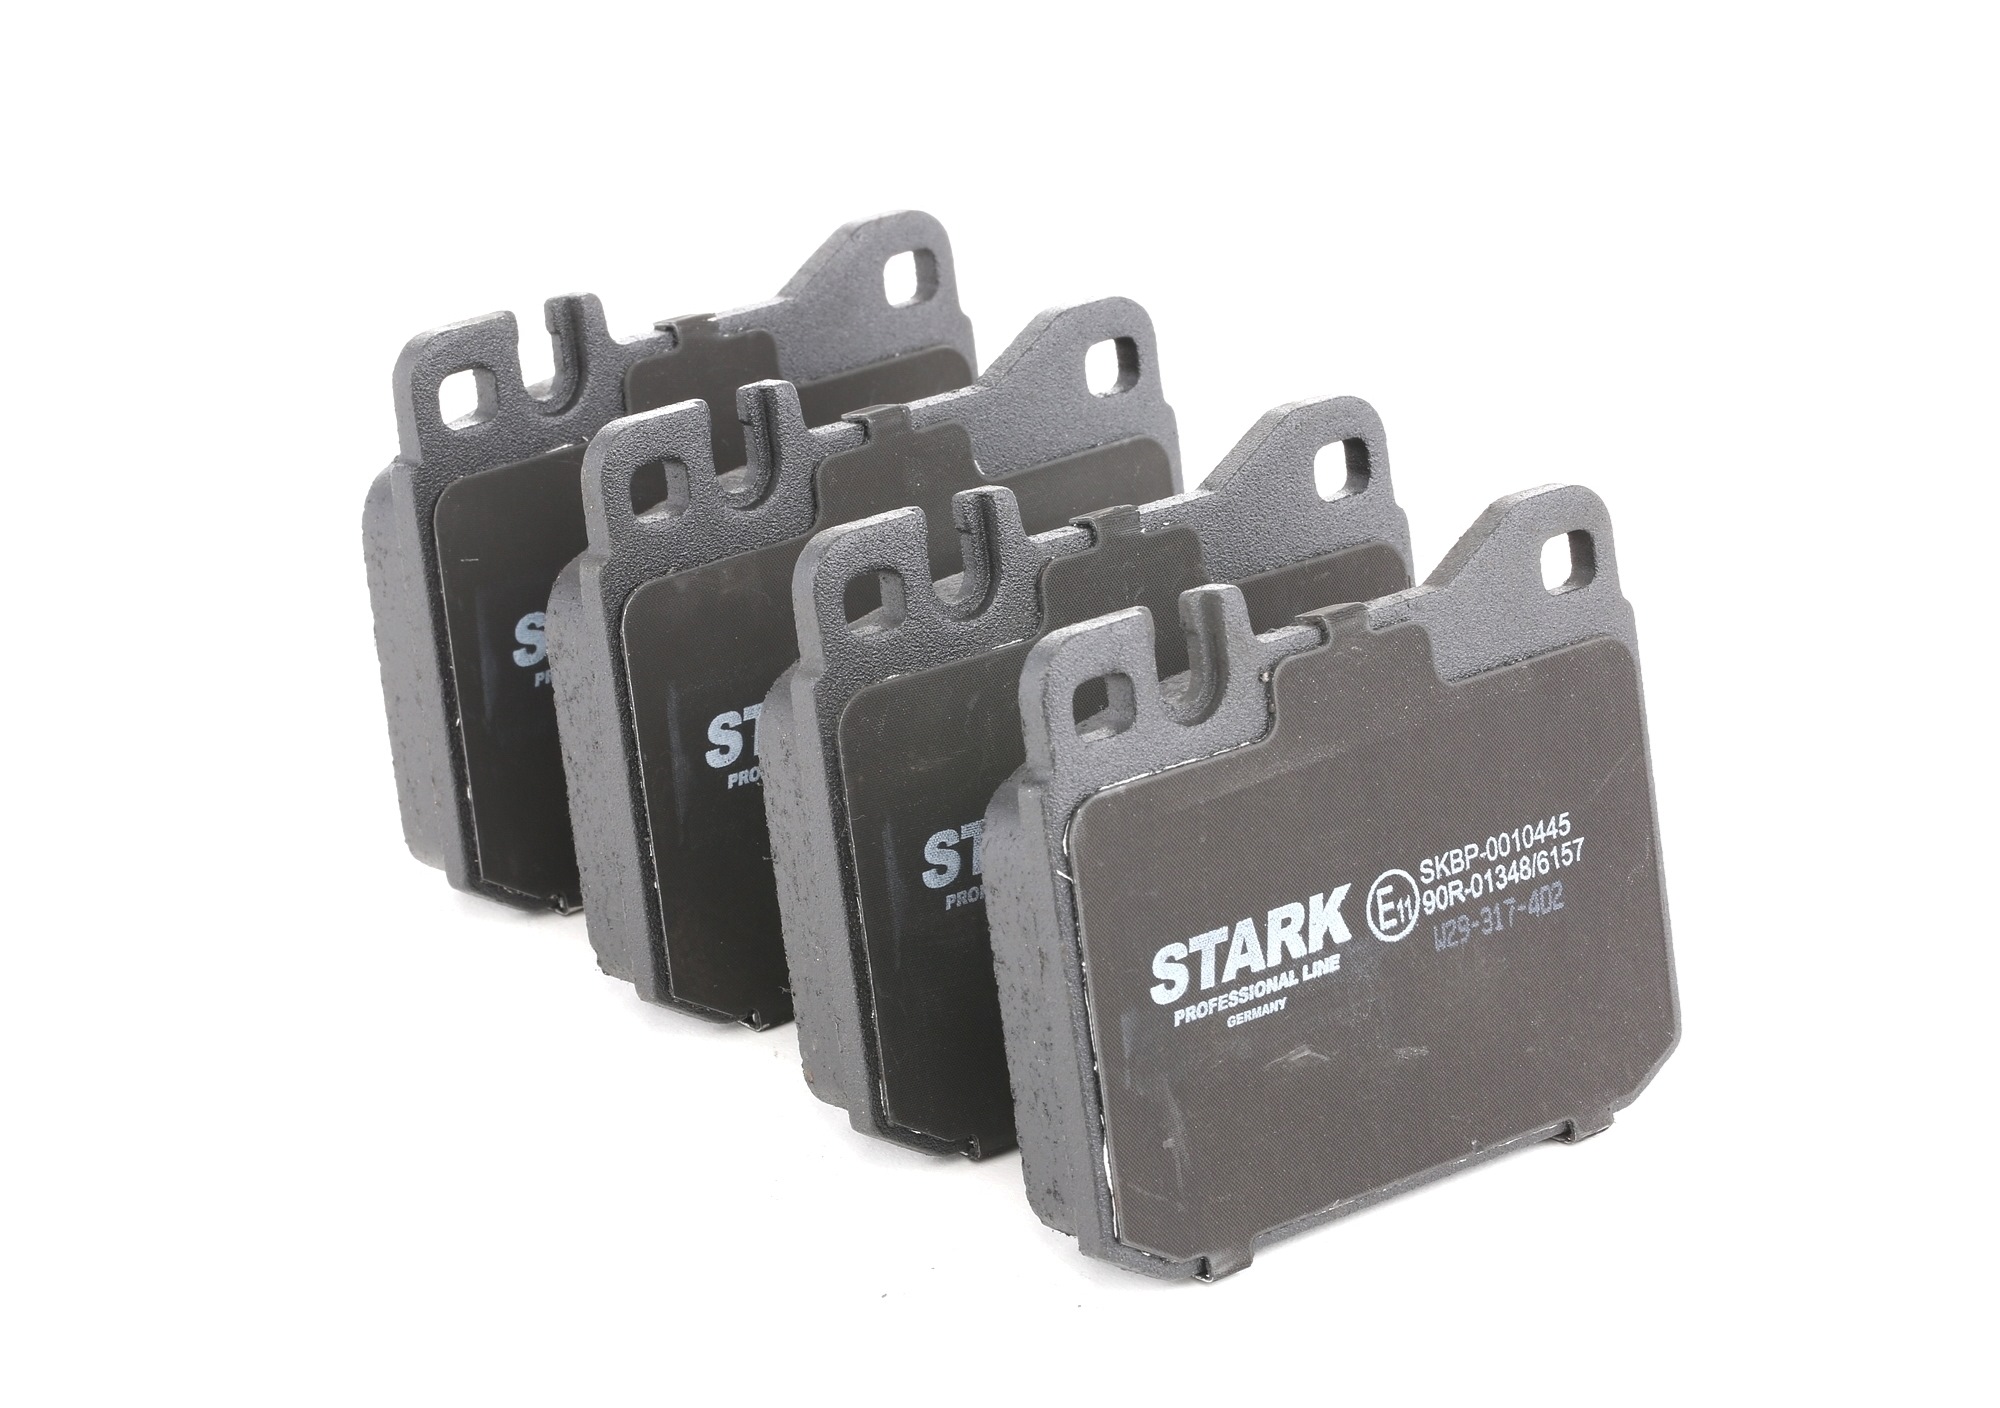 SKBP-0010445 STARK Bremsbelagsatz billiger online kaufen